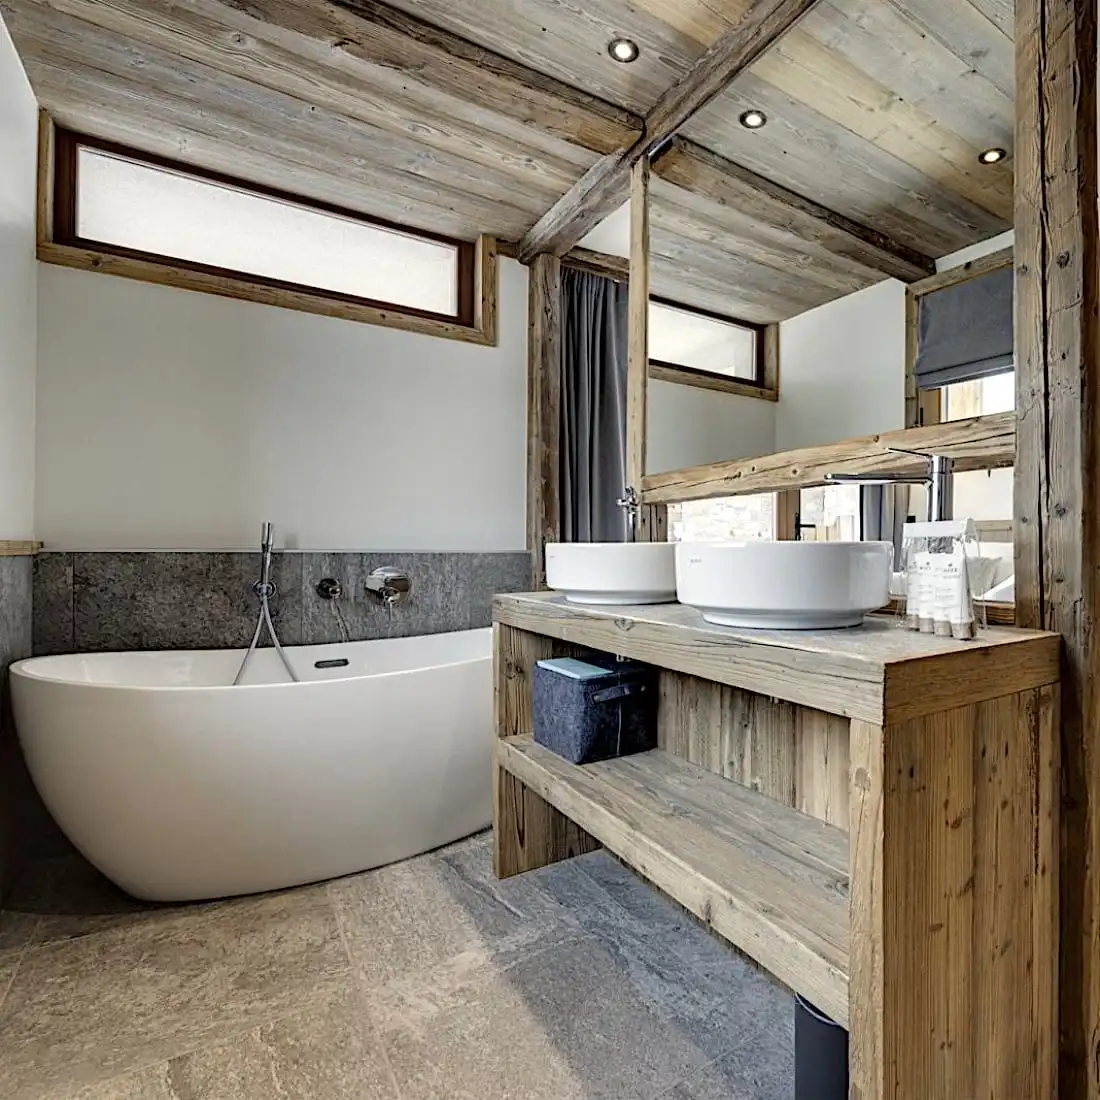  Une salle de bain moderne avec des accents rustiques en panneaux de vieux bois, une baignoire autoportante et des lavabos doubles au décor minimaliste. 